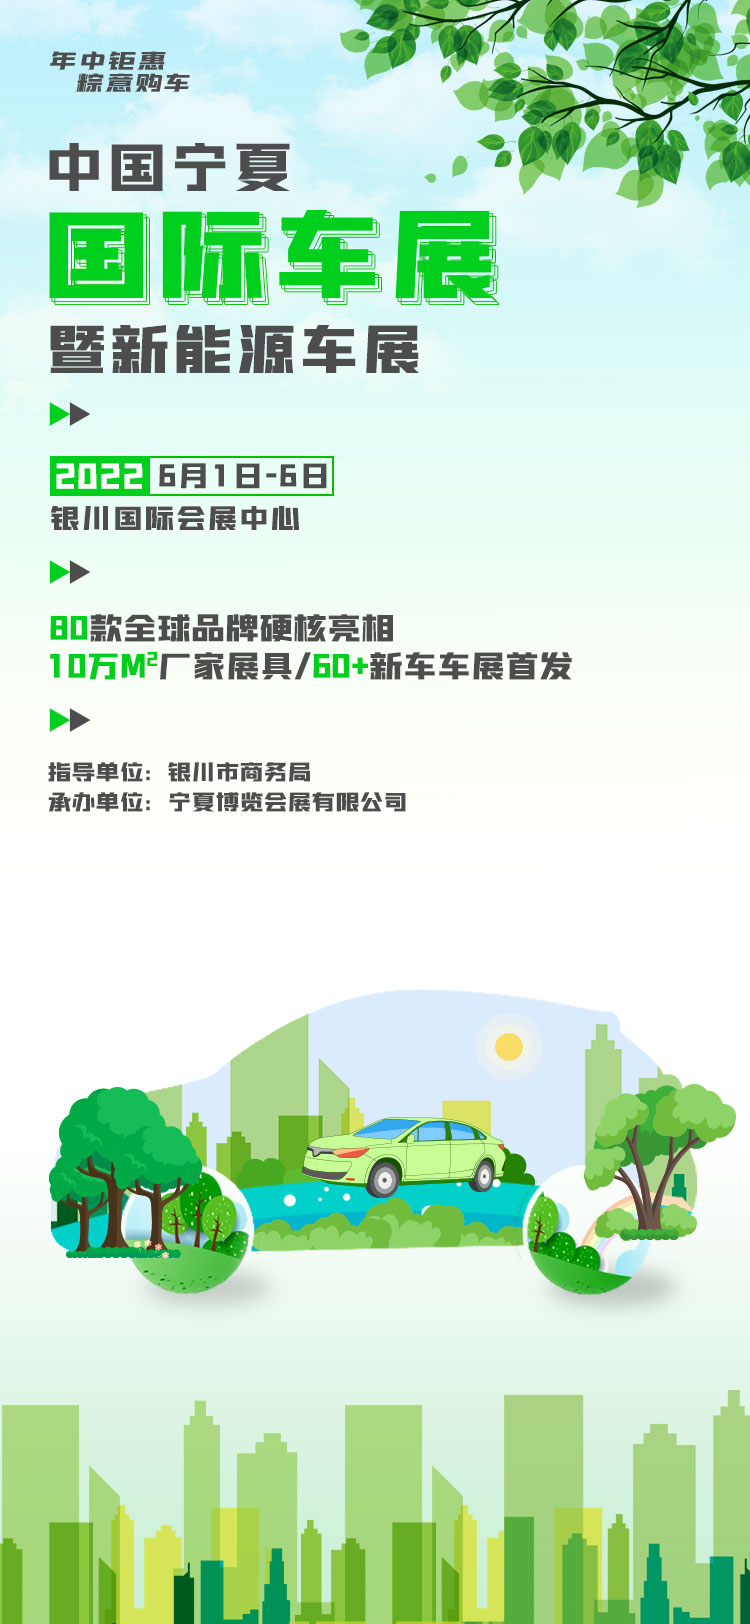 寧夏國際車展暨新能源車展